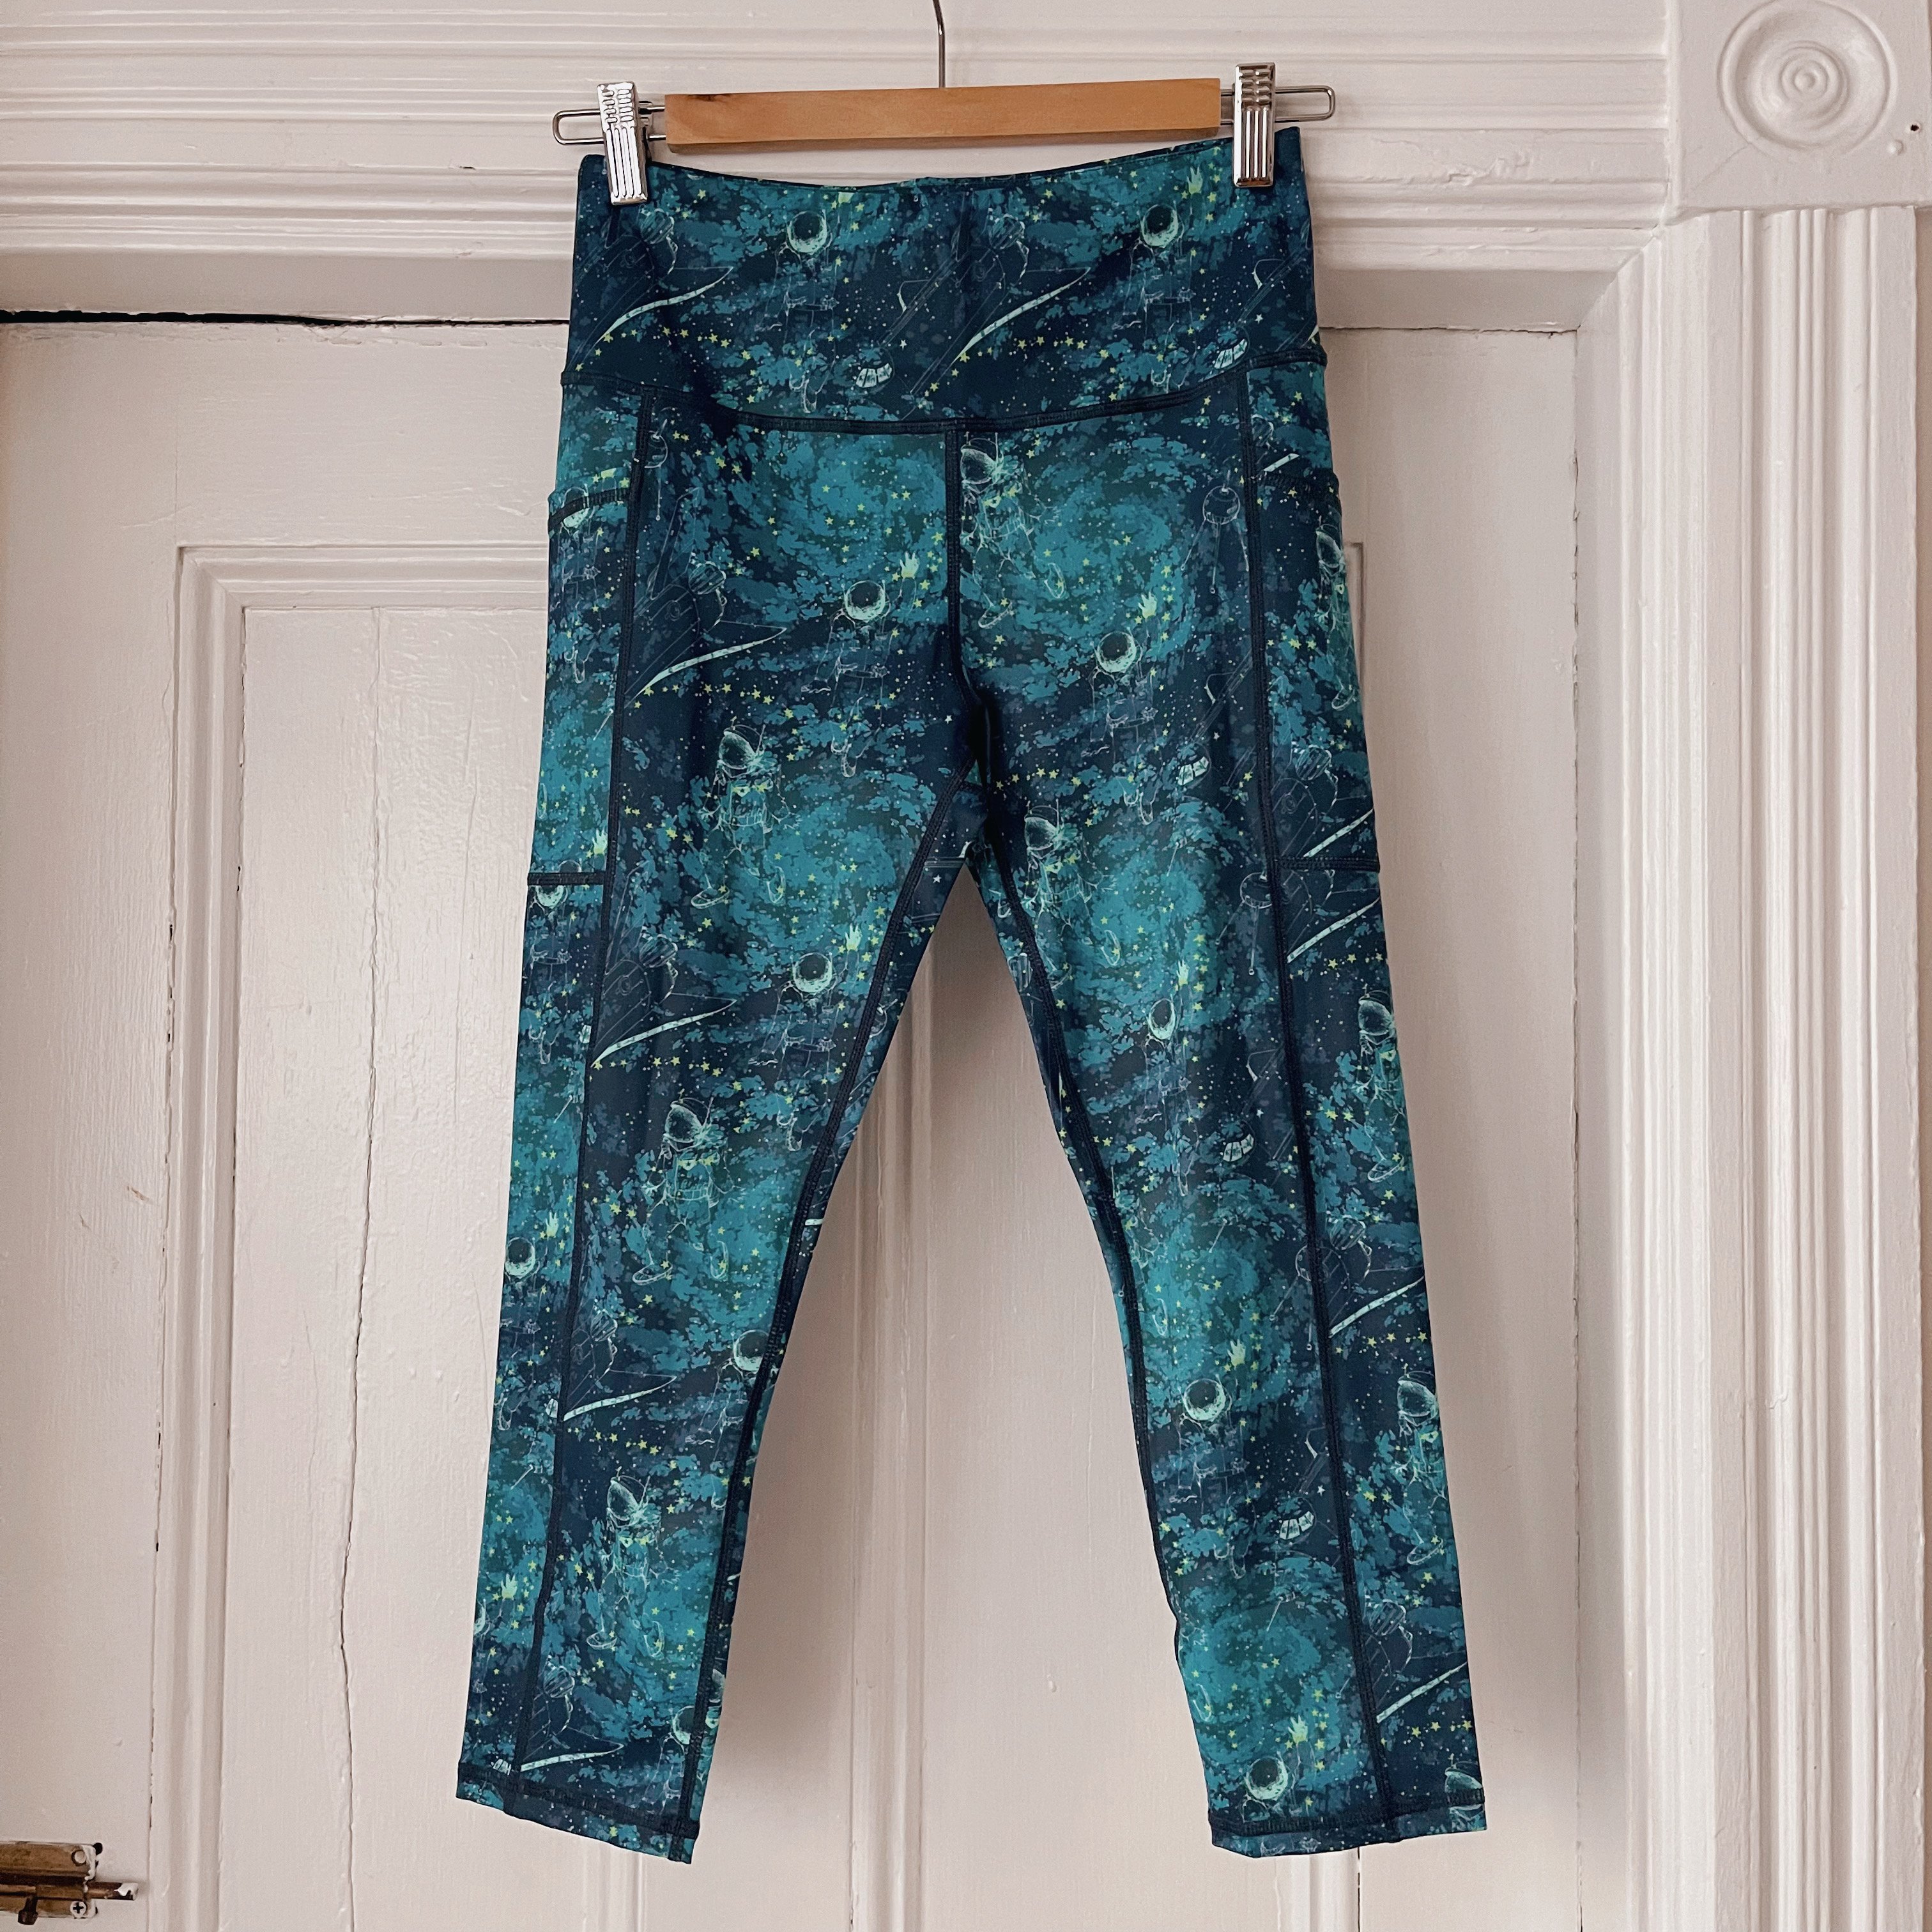 Barbella Box - April's @bornprimitive Inspire leggings